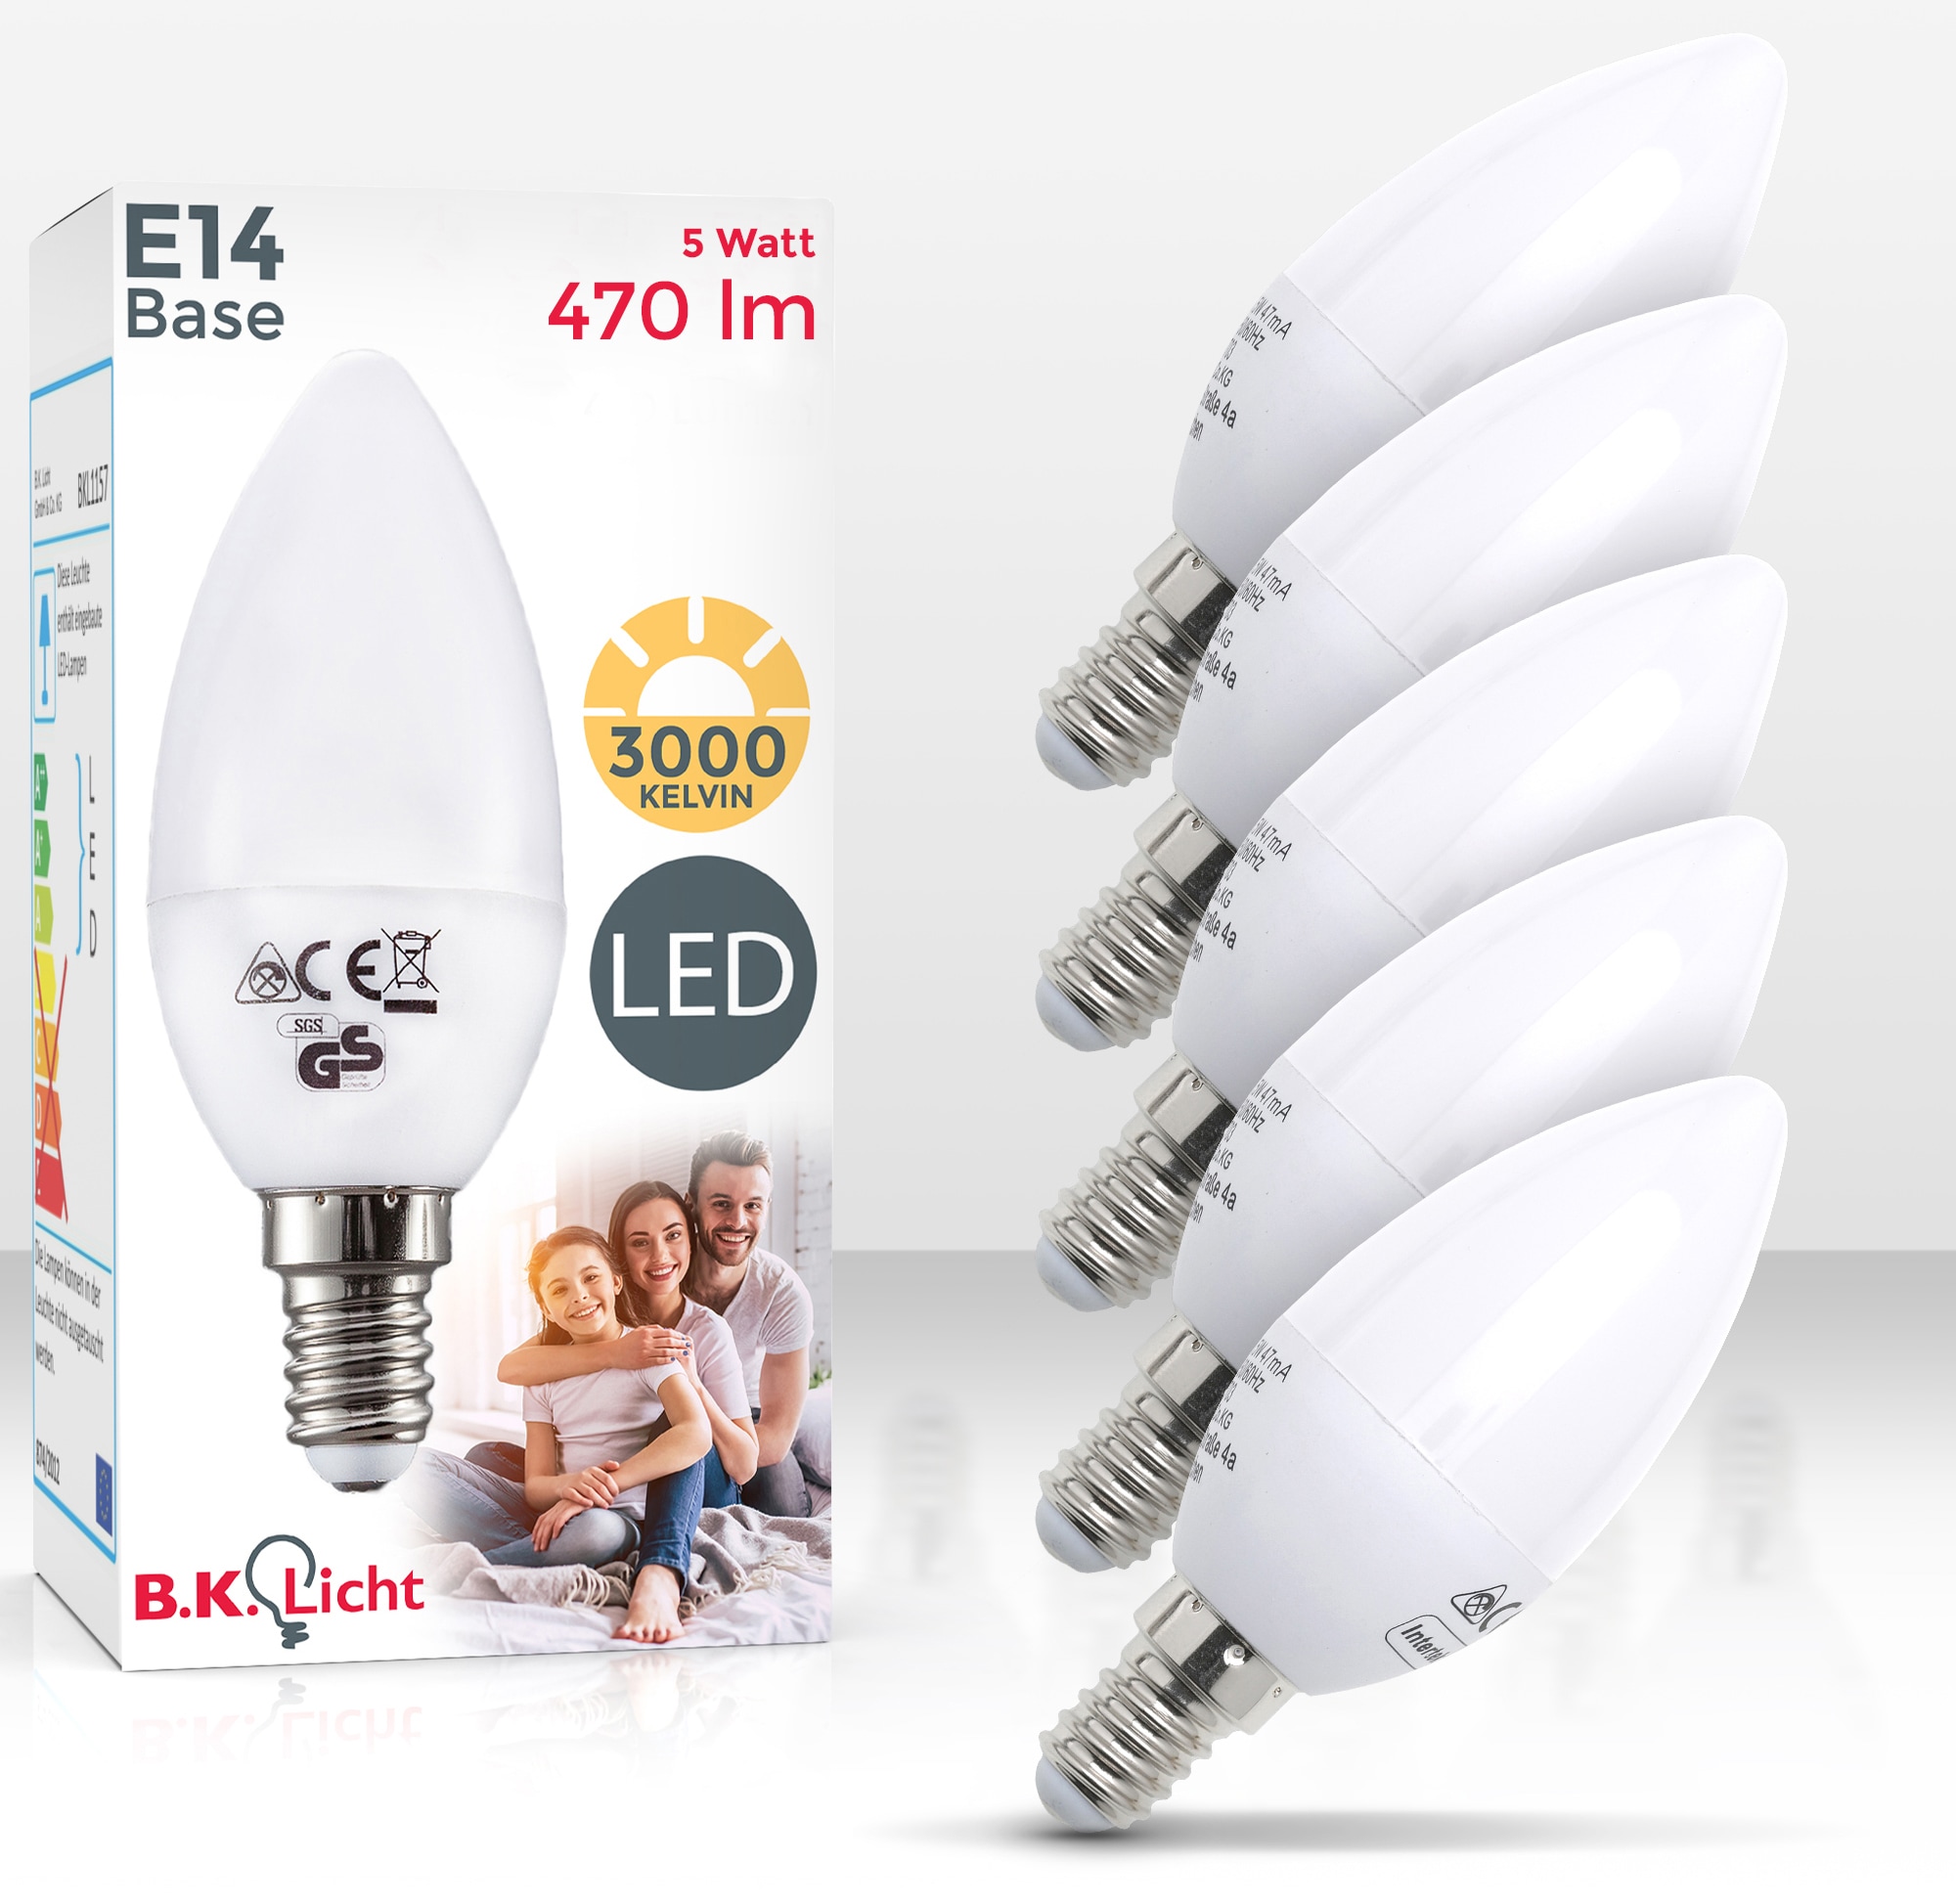 St., Energiesparlampe BAUR LED-Lampe 3.000 | Glühbirne Lumen Kelvin LED-Leuchtmittel, 470 B.K.Licht Warmweiß, bestellen 5 Watt E14, 5